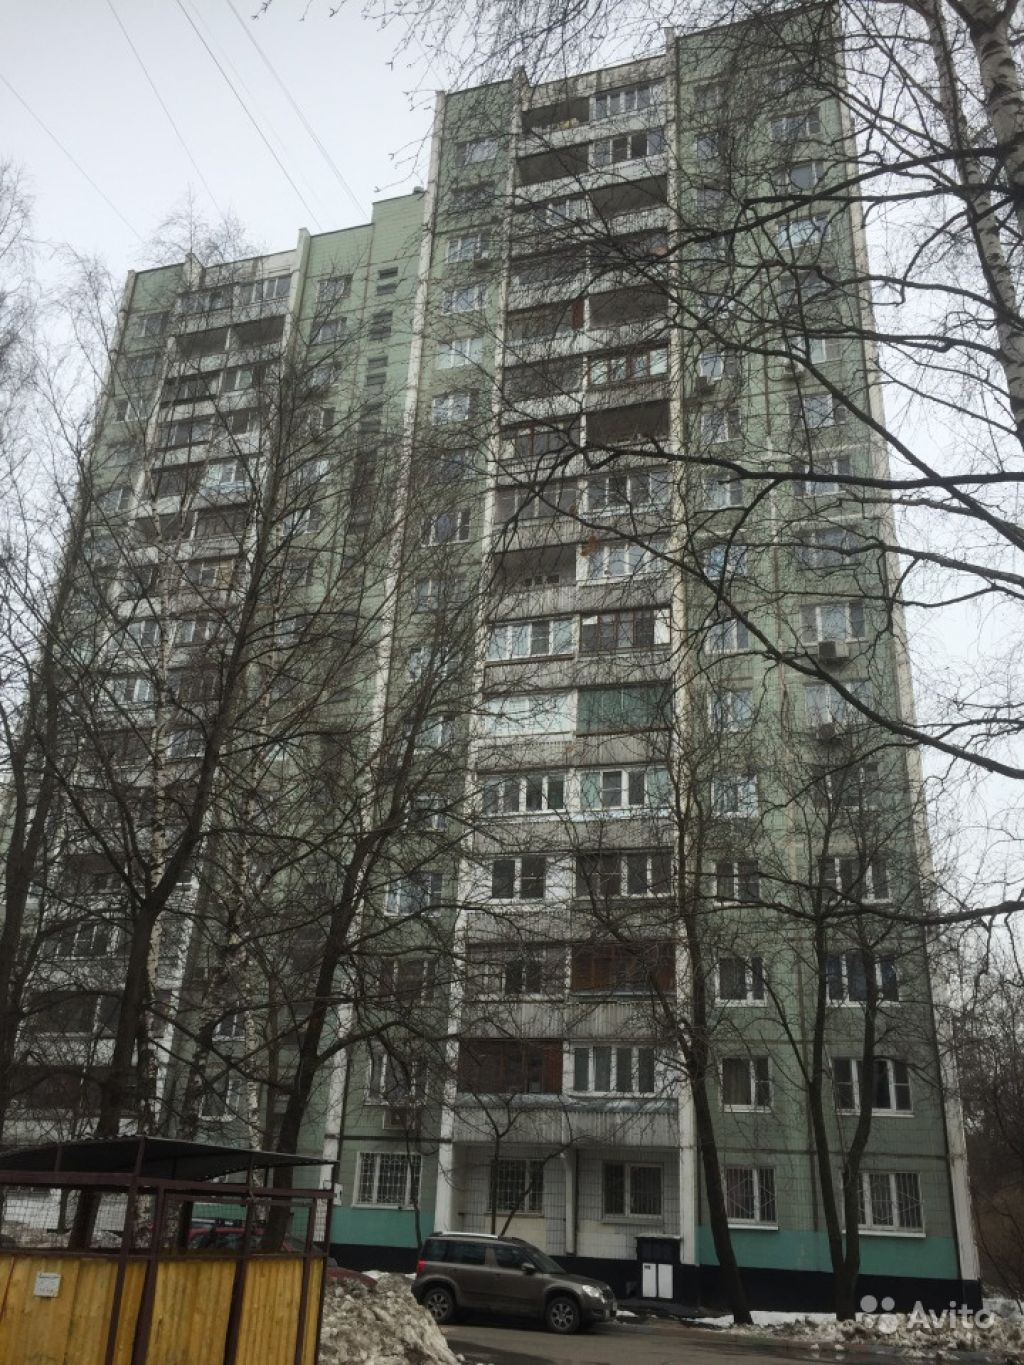 Продам квартиру 1-к квартира 38.2 м² на 4 этаже 22-этажного панельного дома в Москве. Фото 1